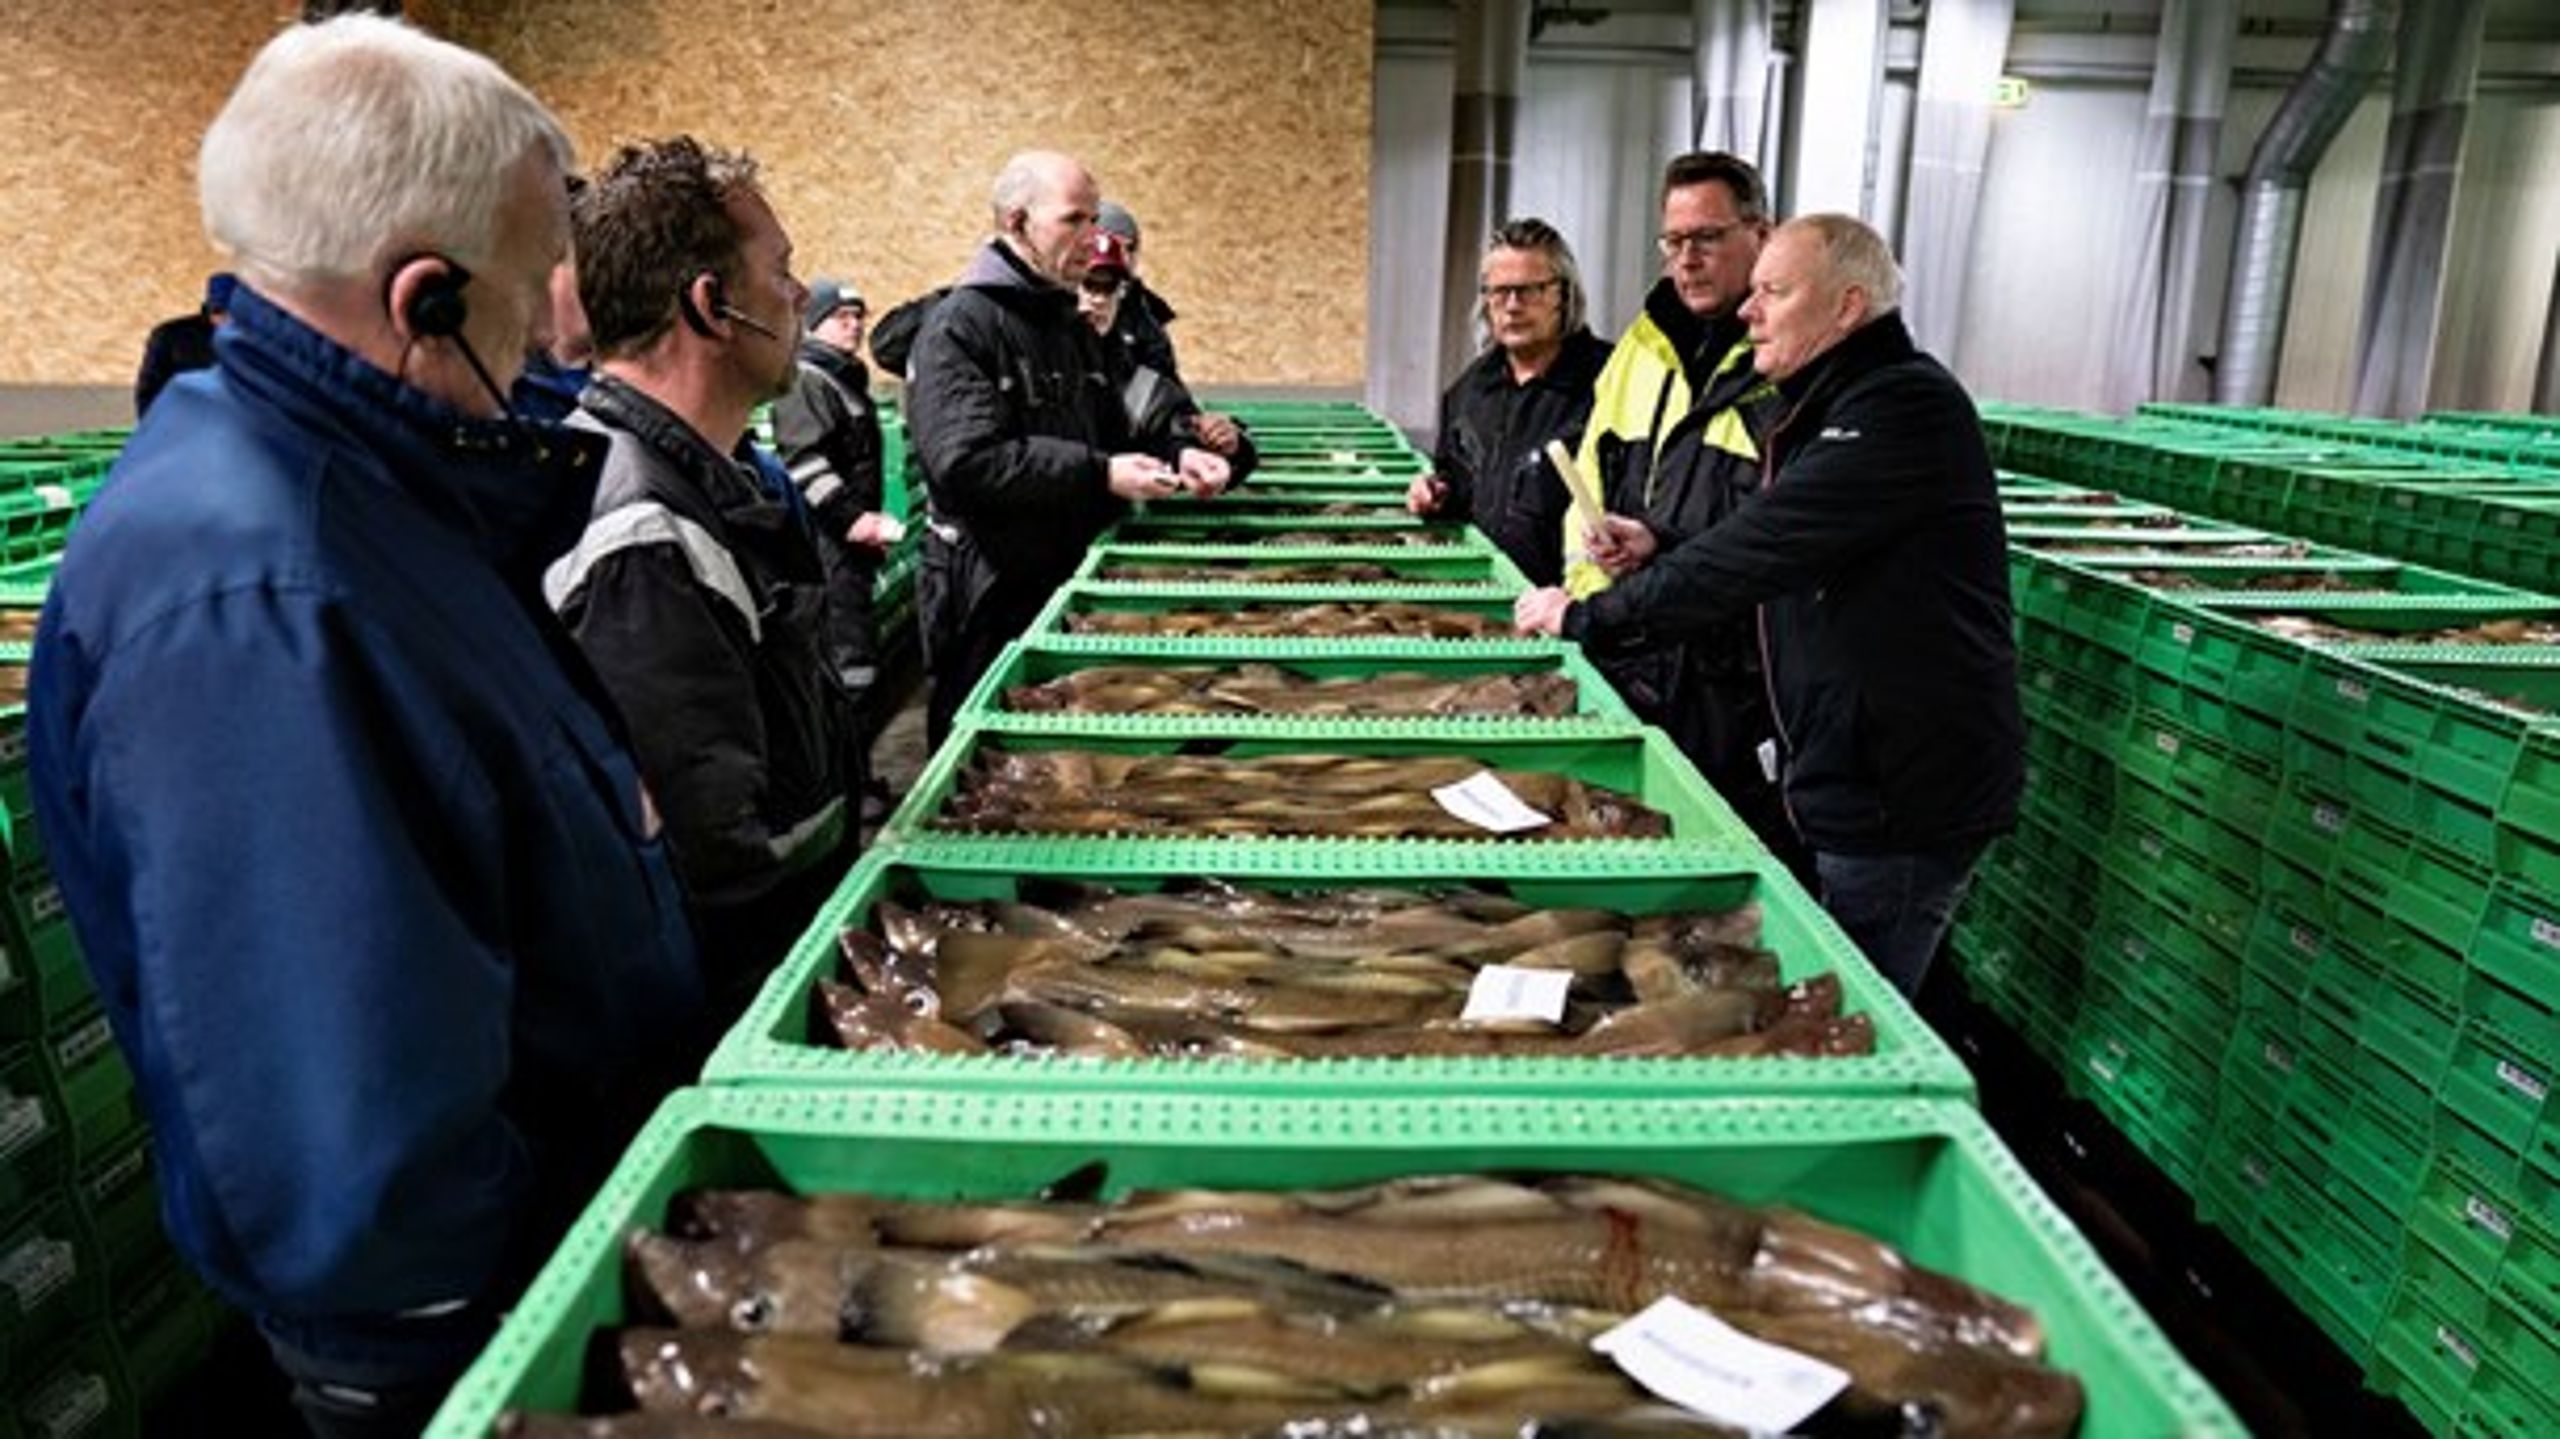 Øget overvågning kommer ikke til at redde torsken, skriver&nbsp;Sofie Smedegaard Mathiesen fra Danmarks Fiskeriforening.&nbsp;